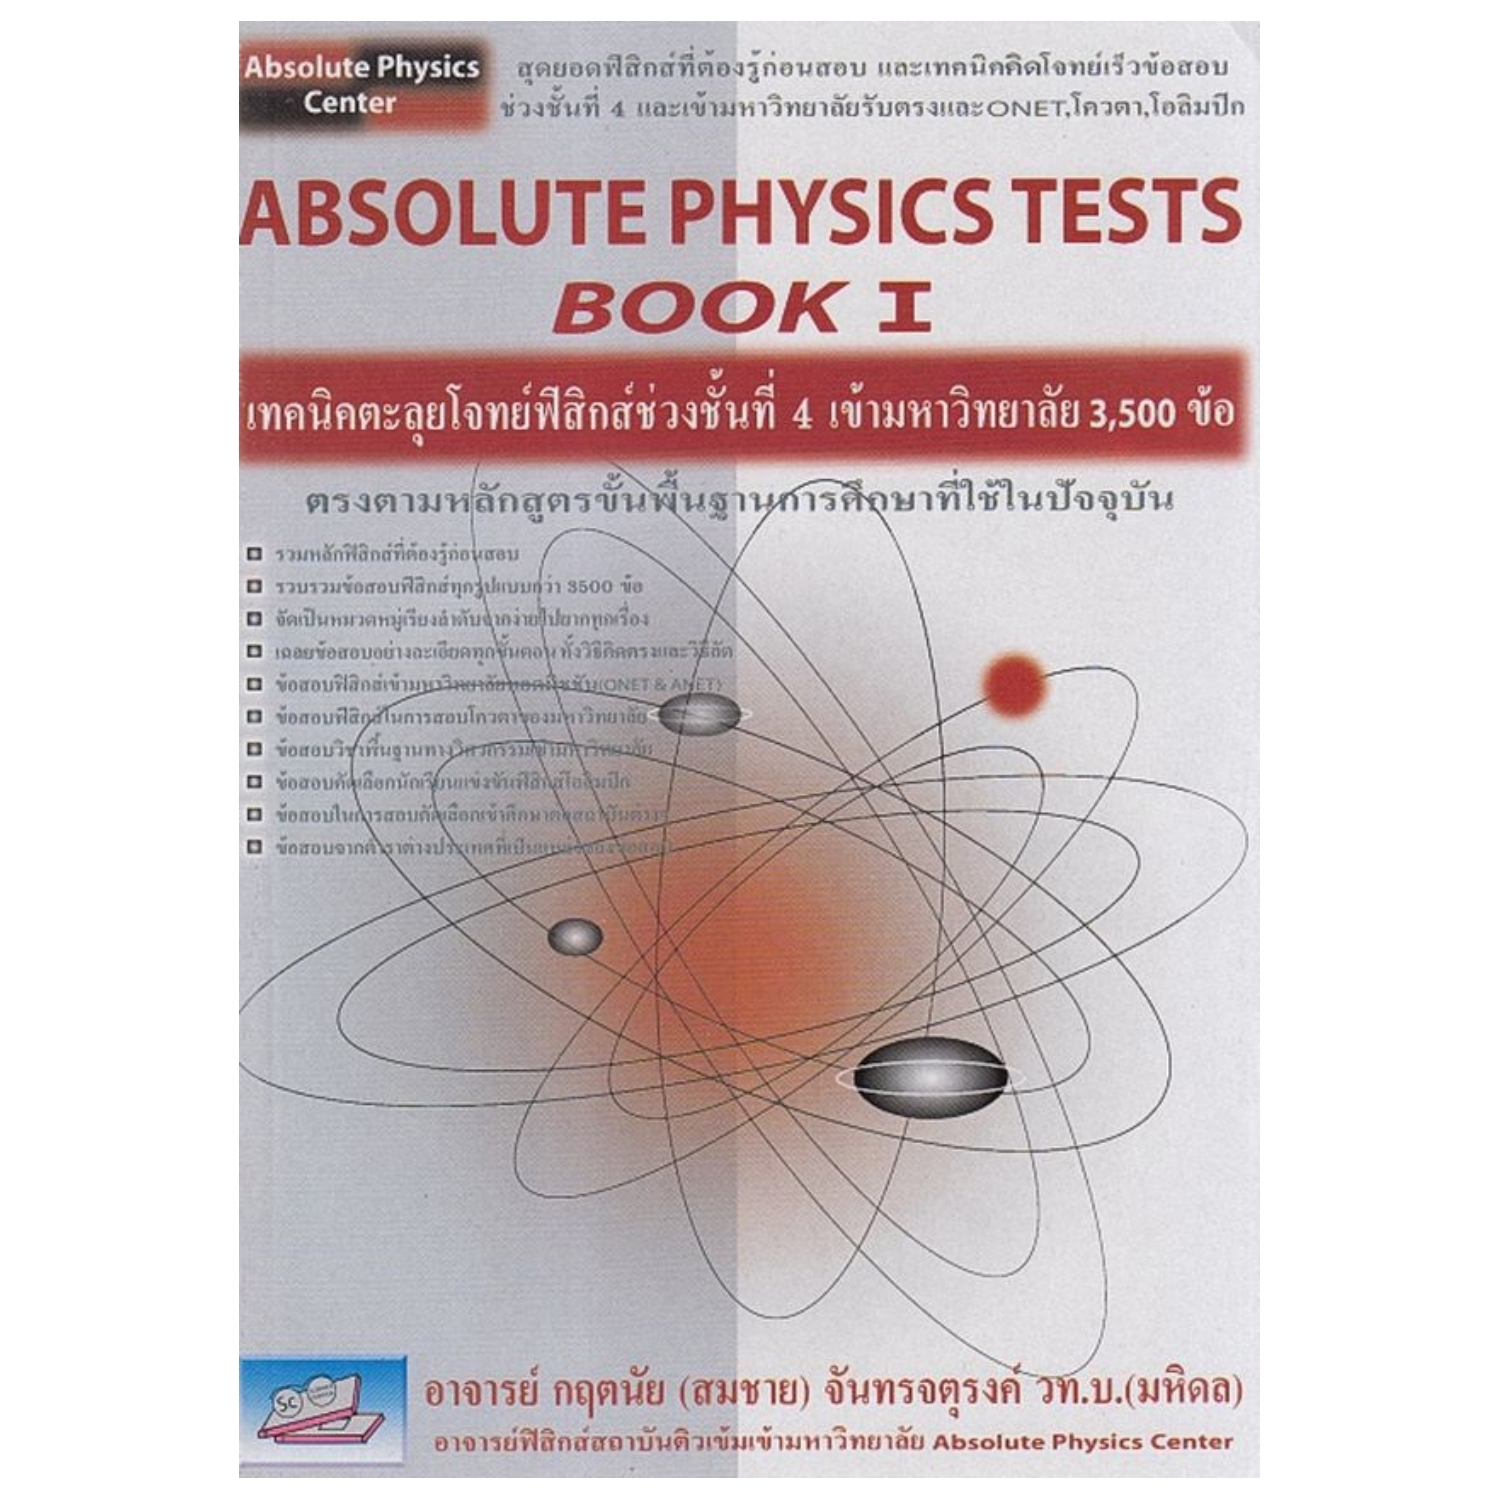 ABSOLUTE PHYSICS TESTS Book 1 เทคนิคตะลุยโจทย์ฟิสิกส์